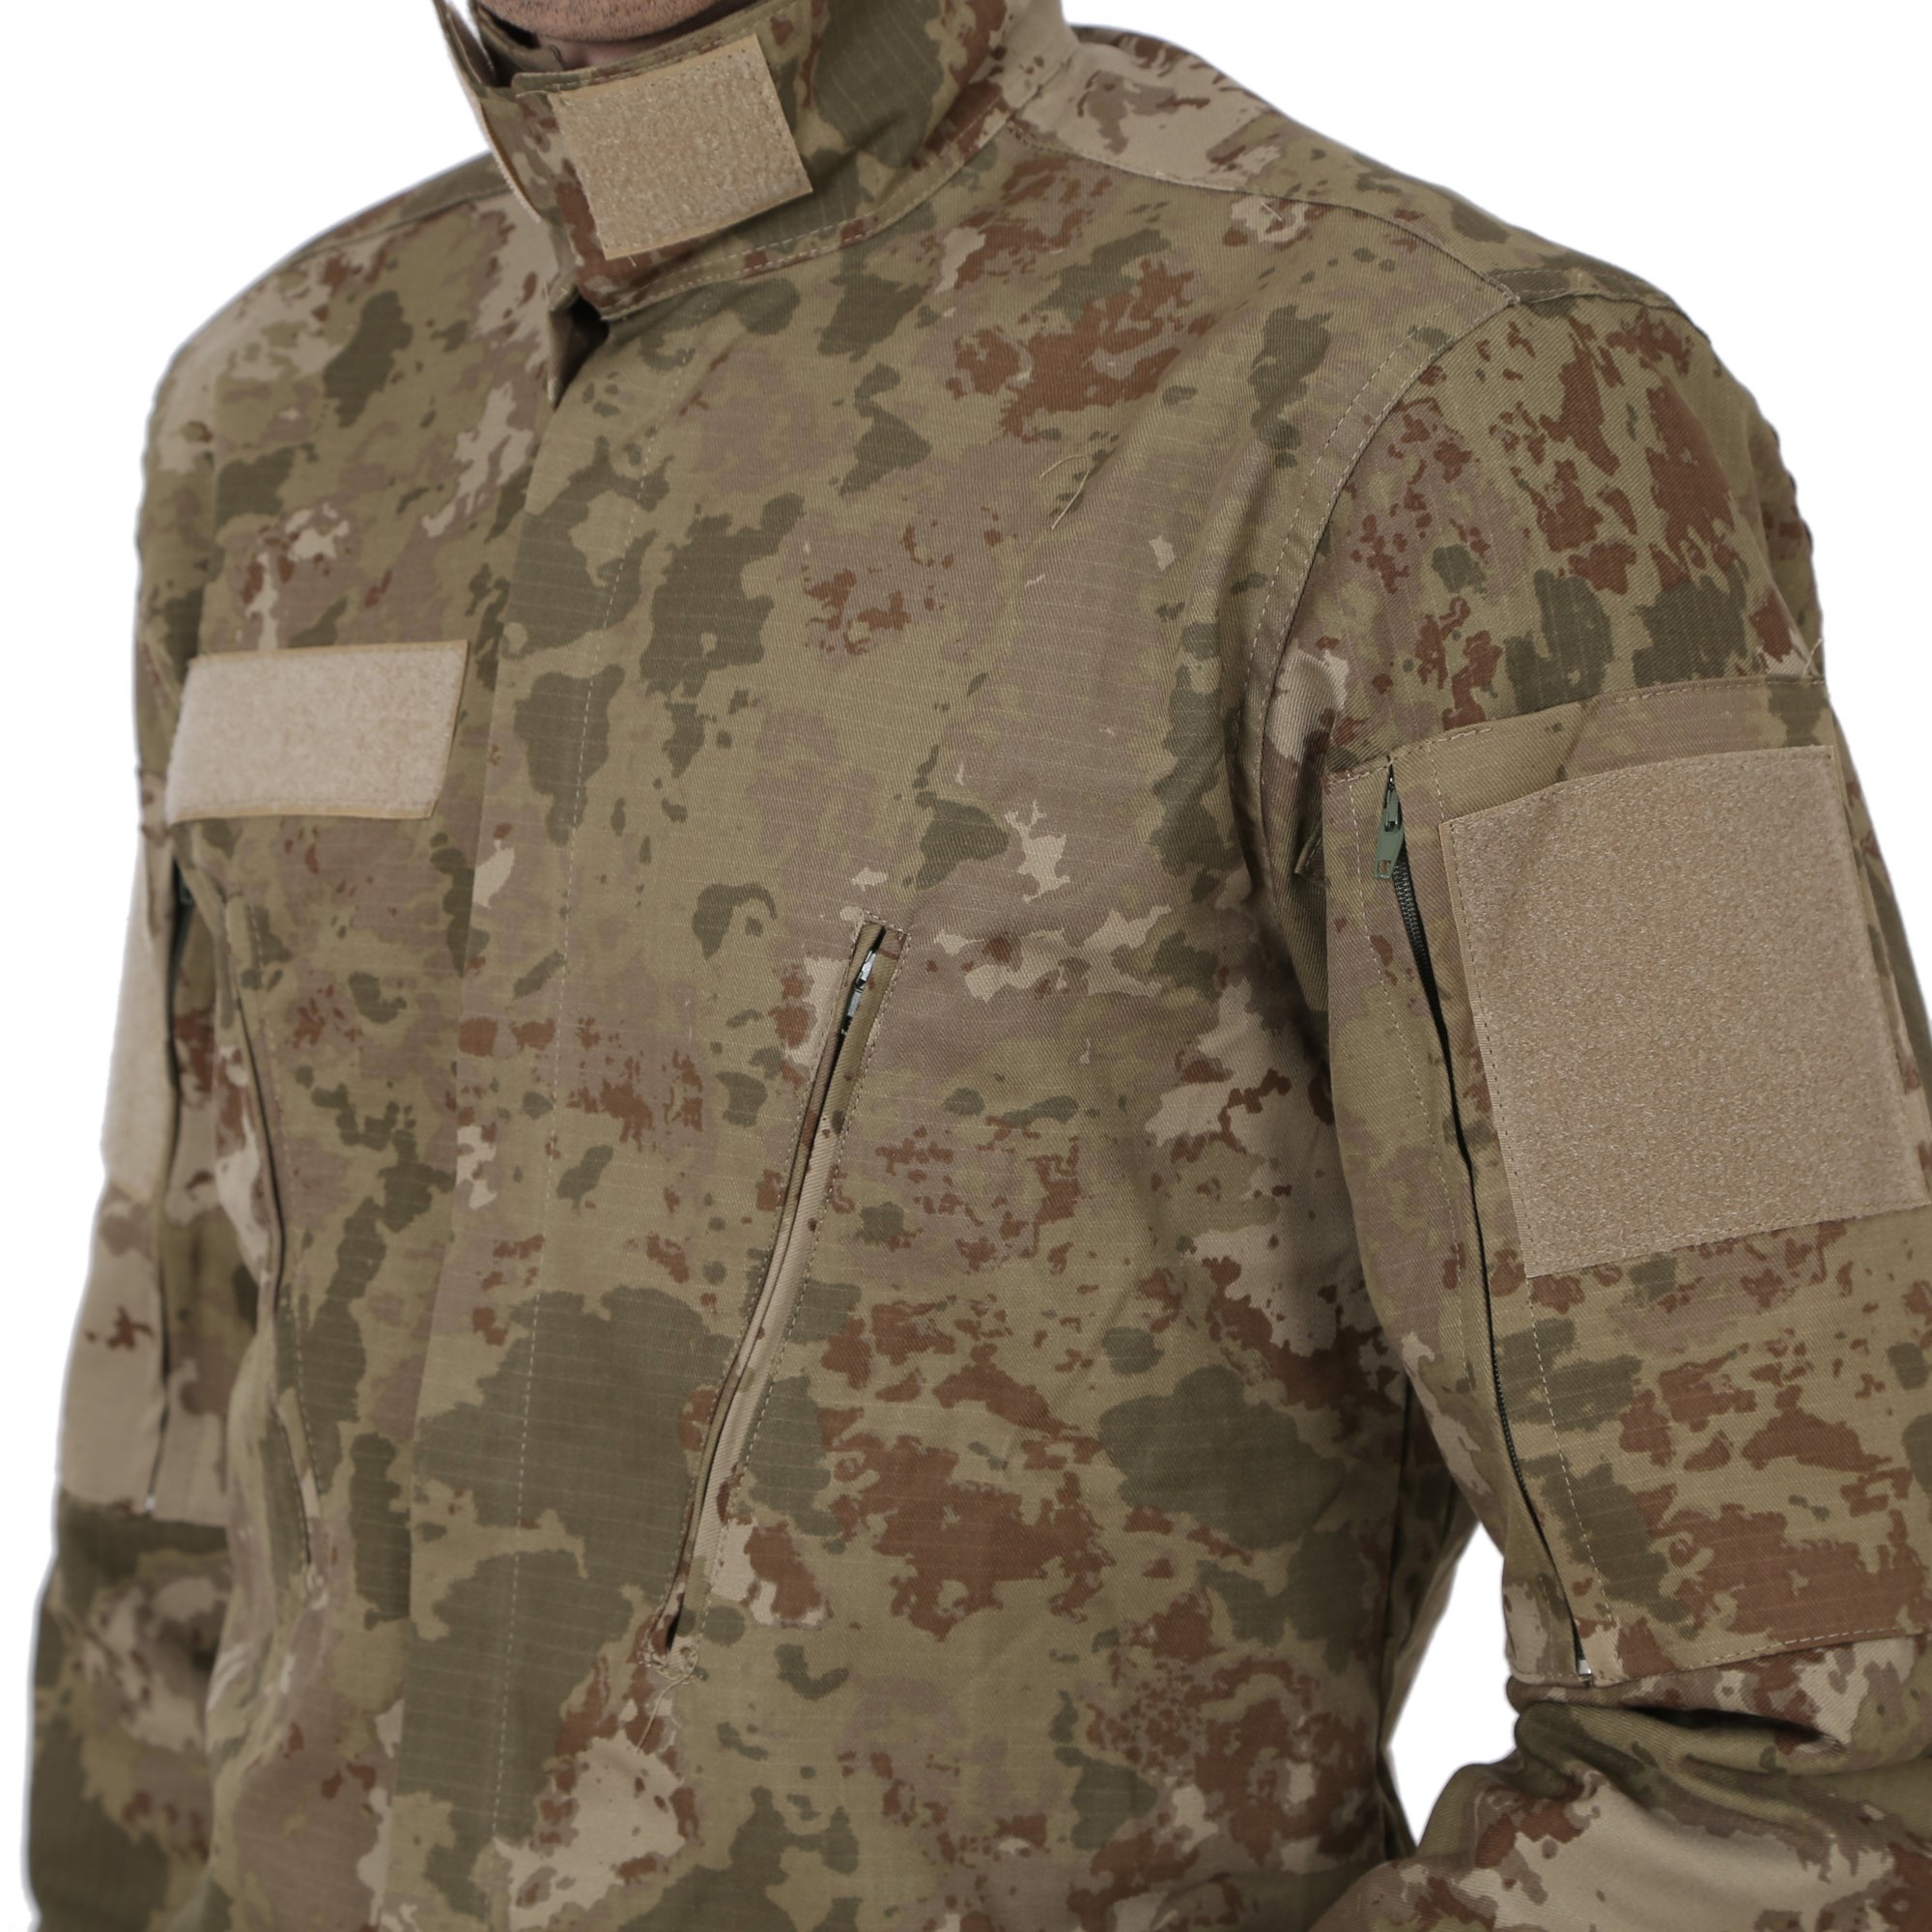 Yeni TSK 2021 Model Kıyafetleri , Yeni Askeri üniforma